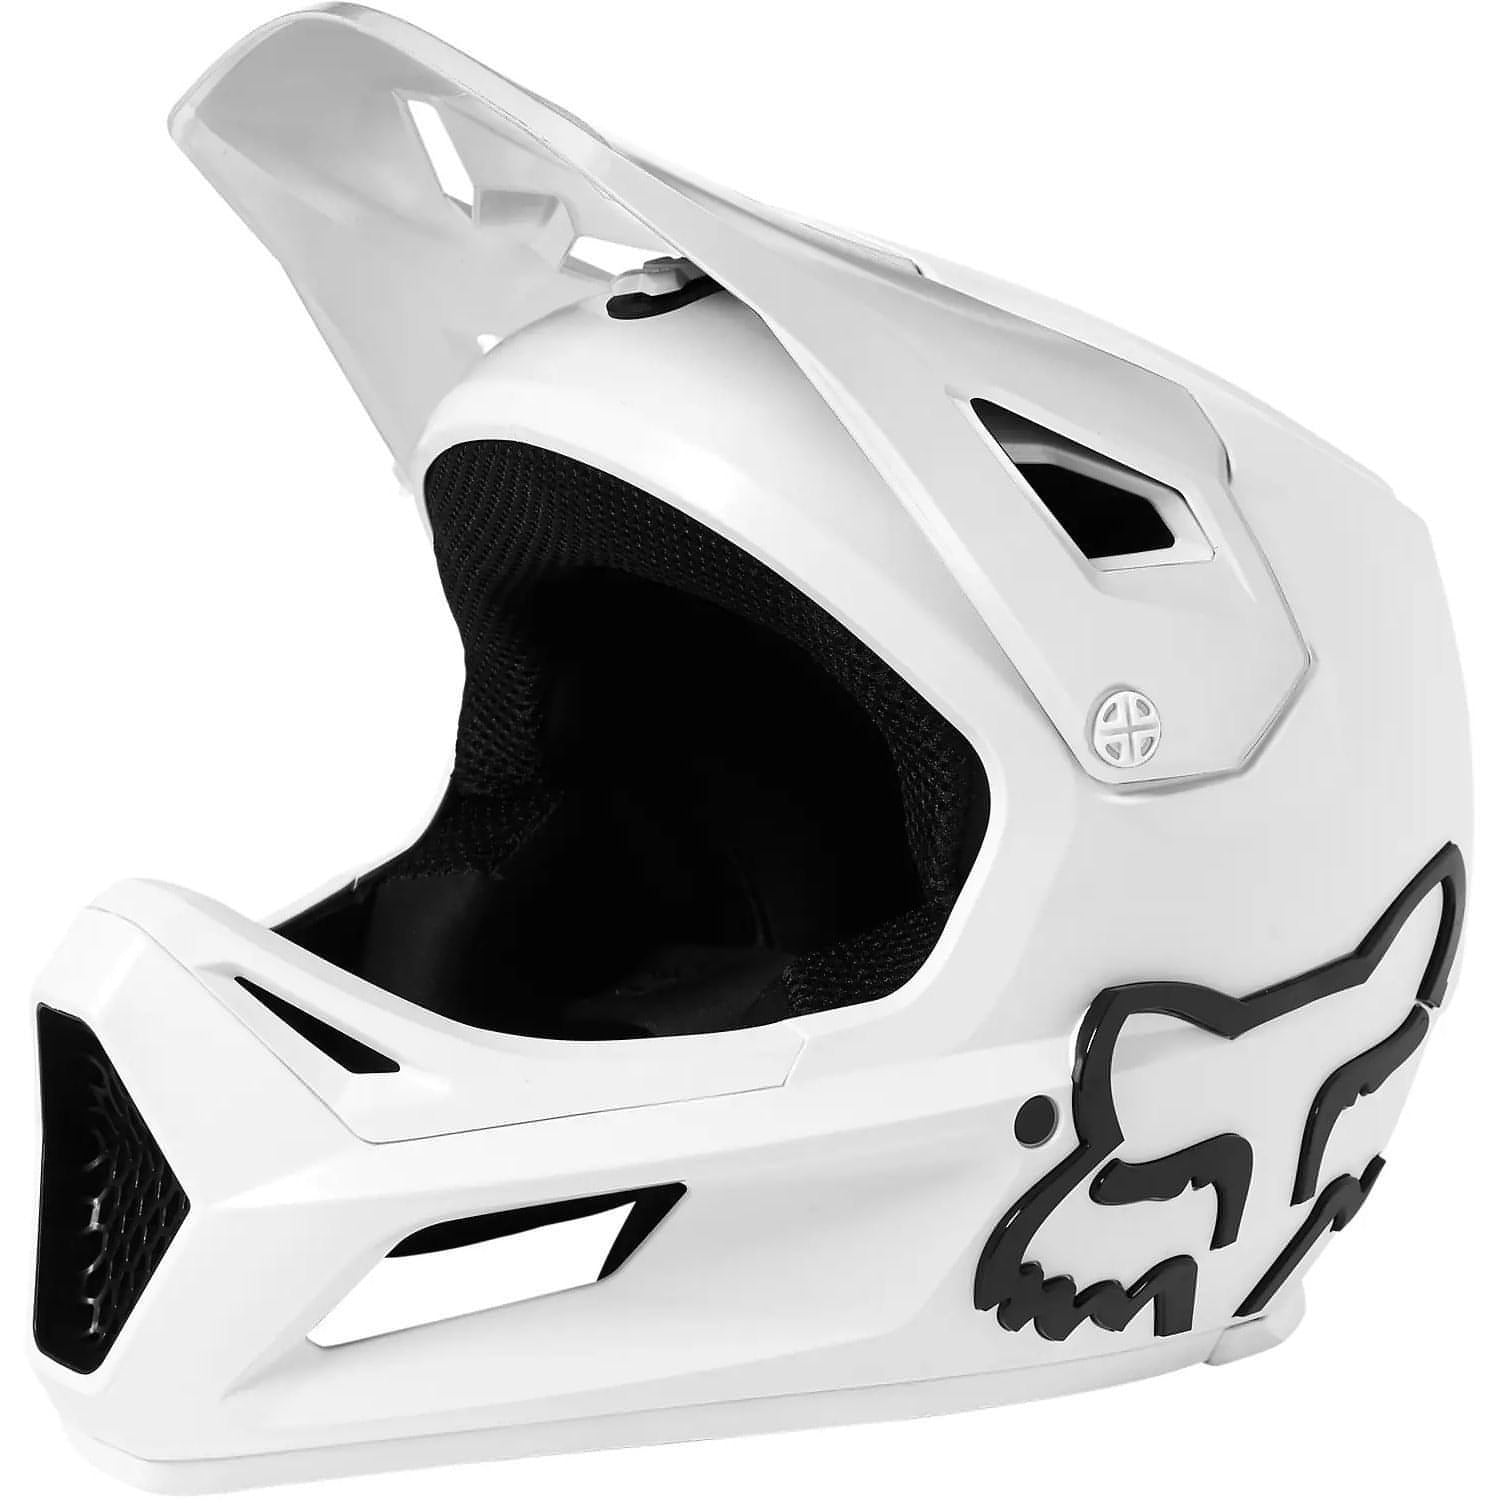 Fox Rampage Helmet Side - Side View